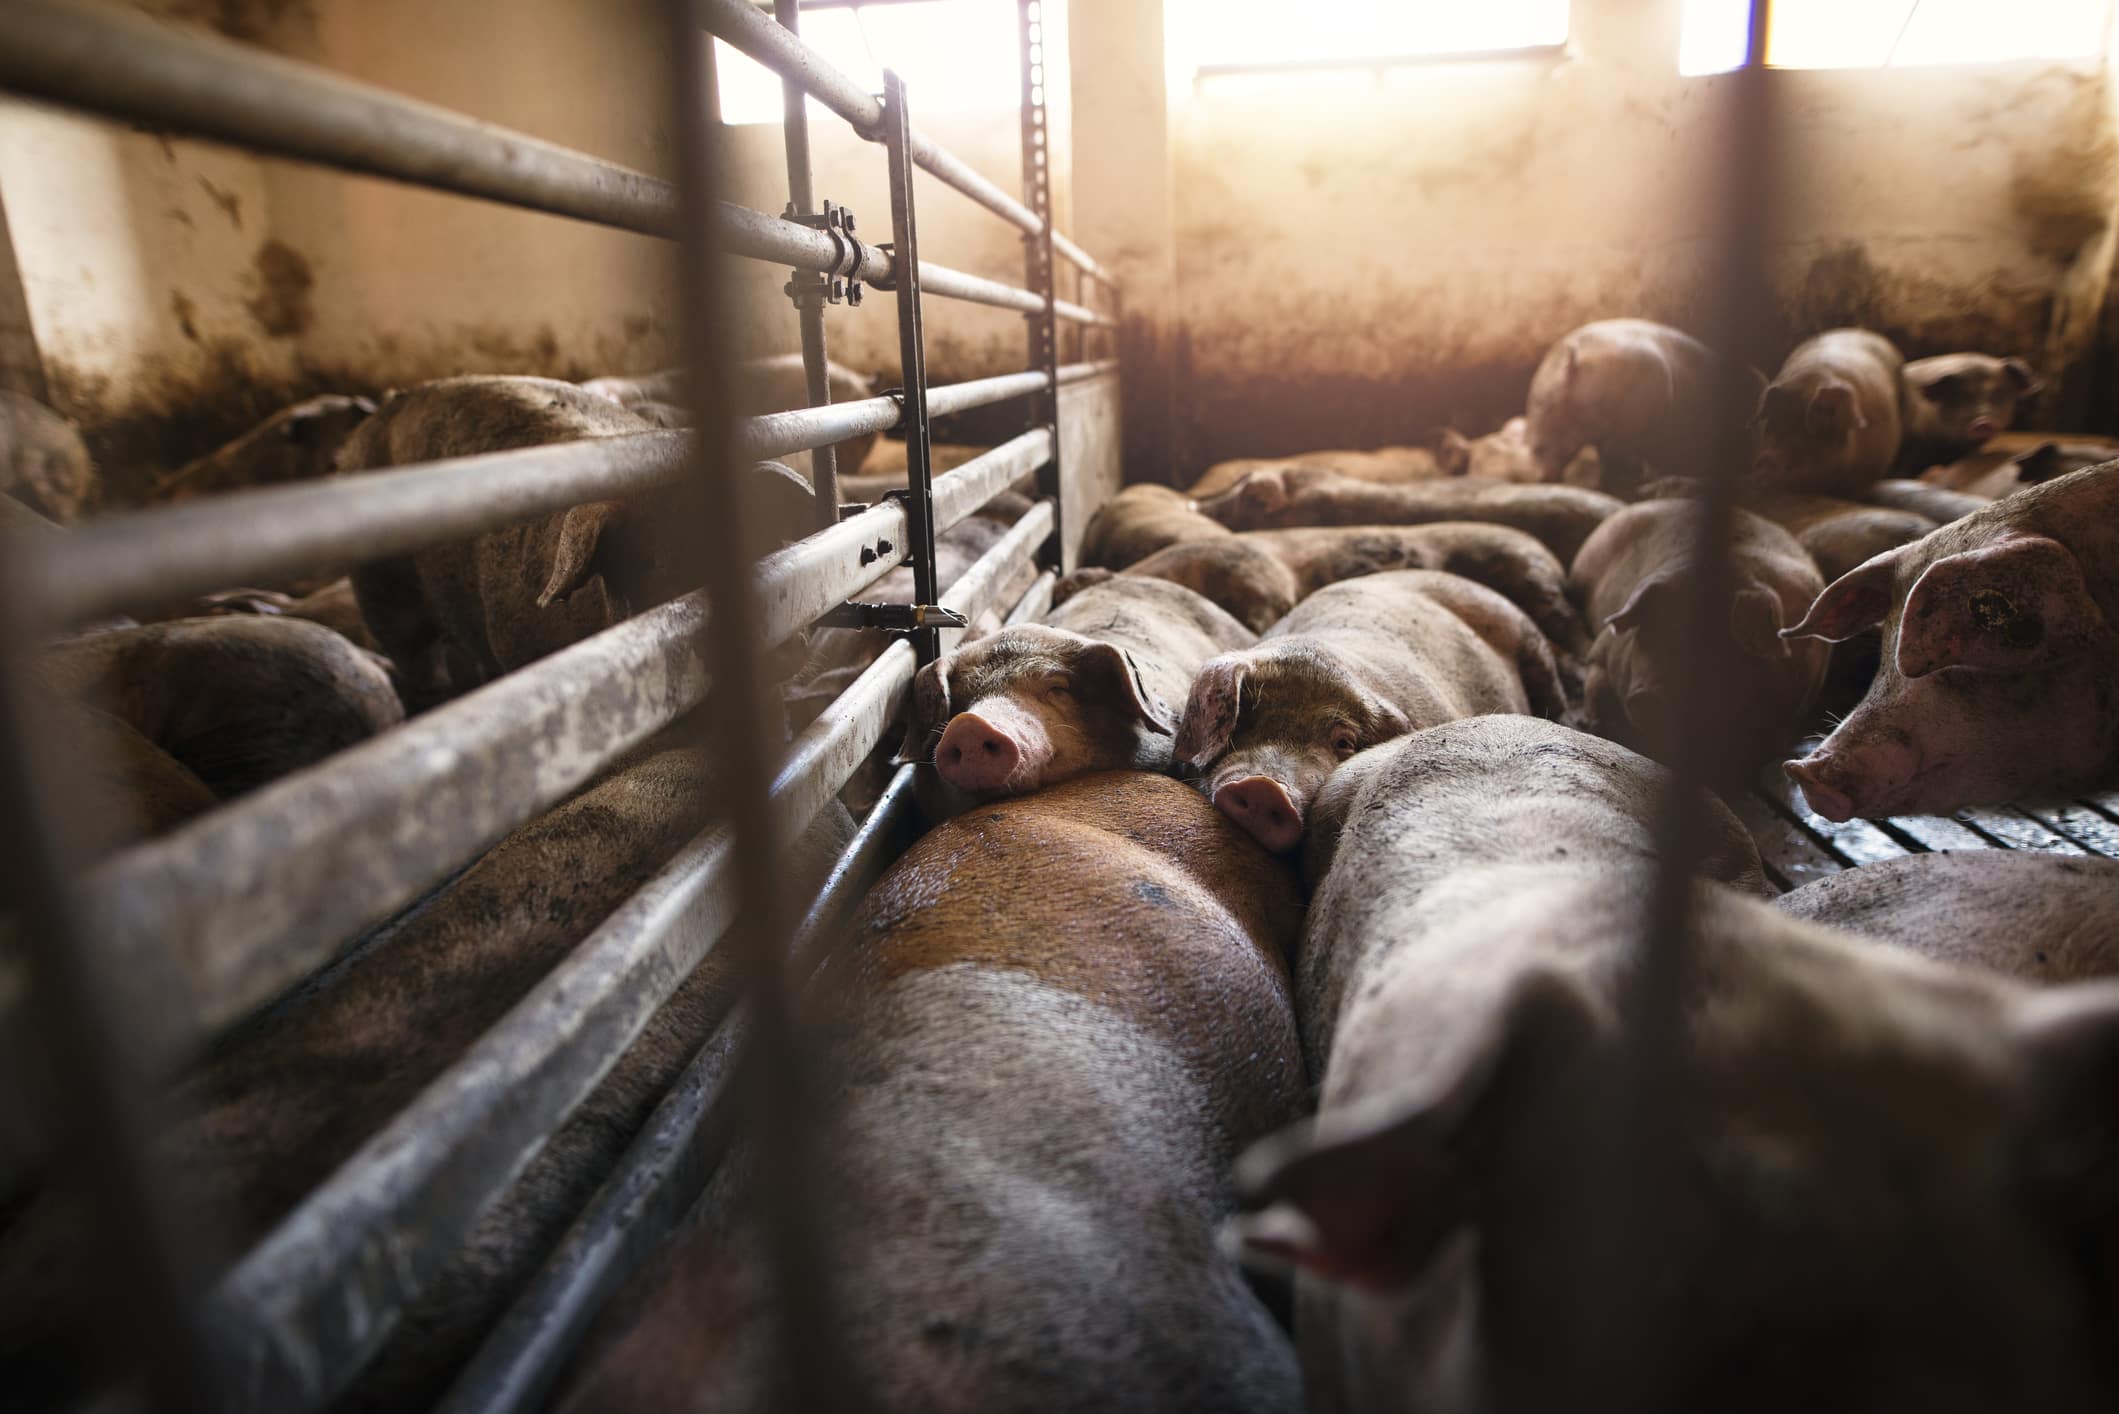 az emberi egészségre ártalmas az antibiotikum túlhasználat az állattenyésztésben